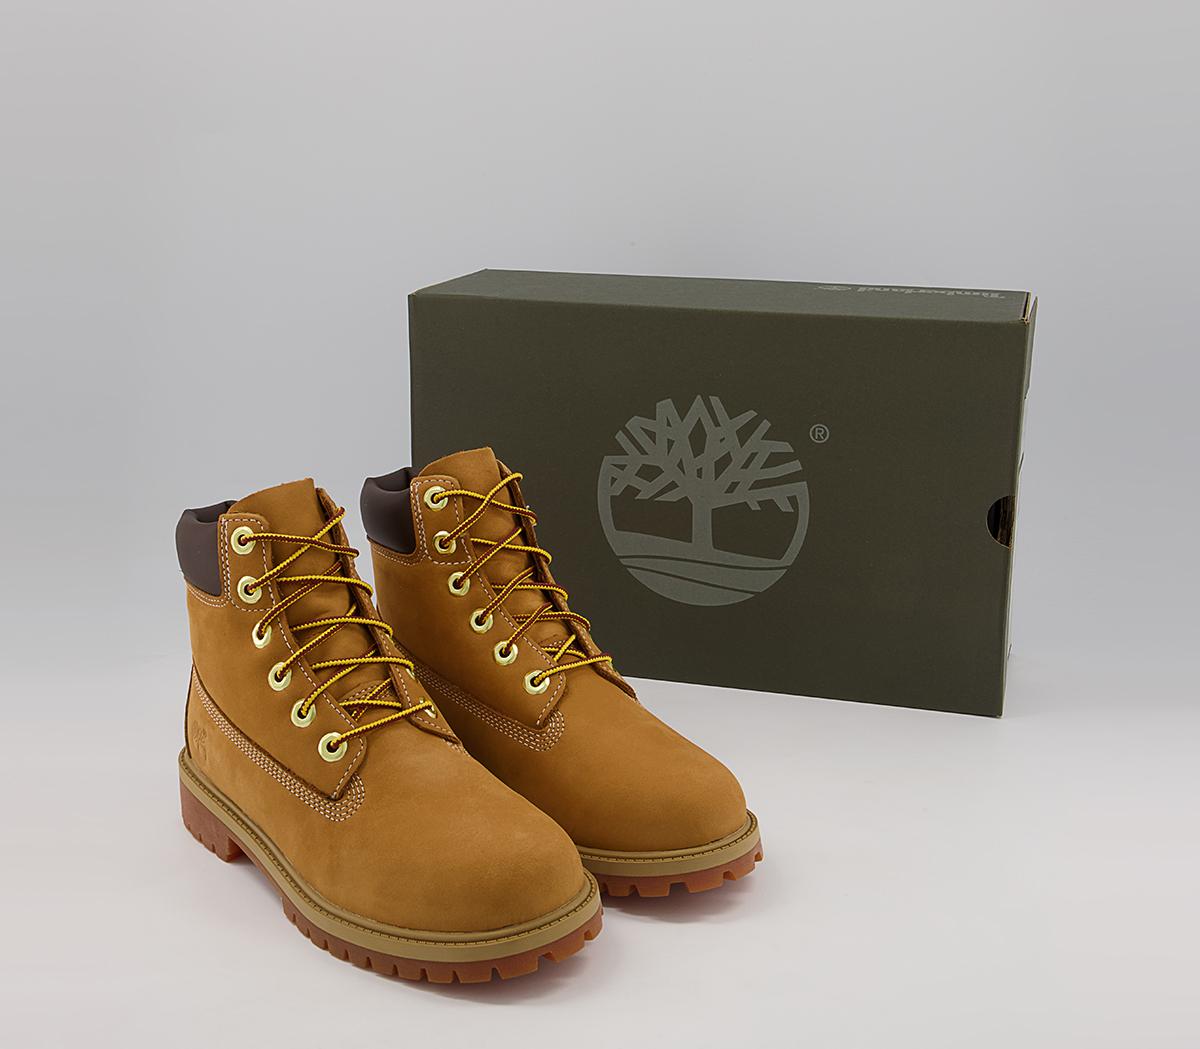 Timberland Juniors 6 Inch Premium Waterproof Boots Wheat Nubuck - Women ...